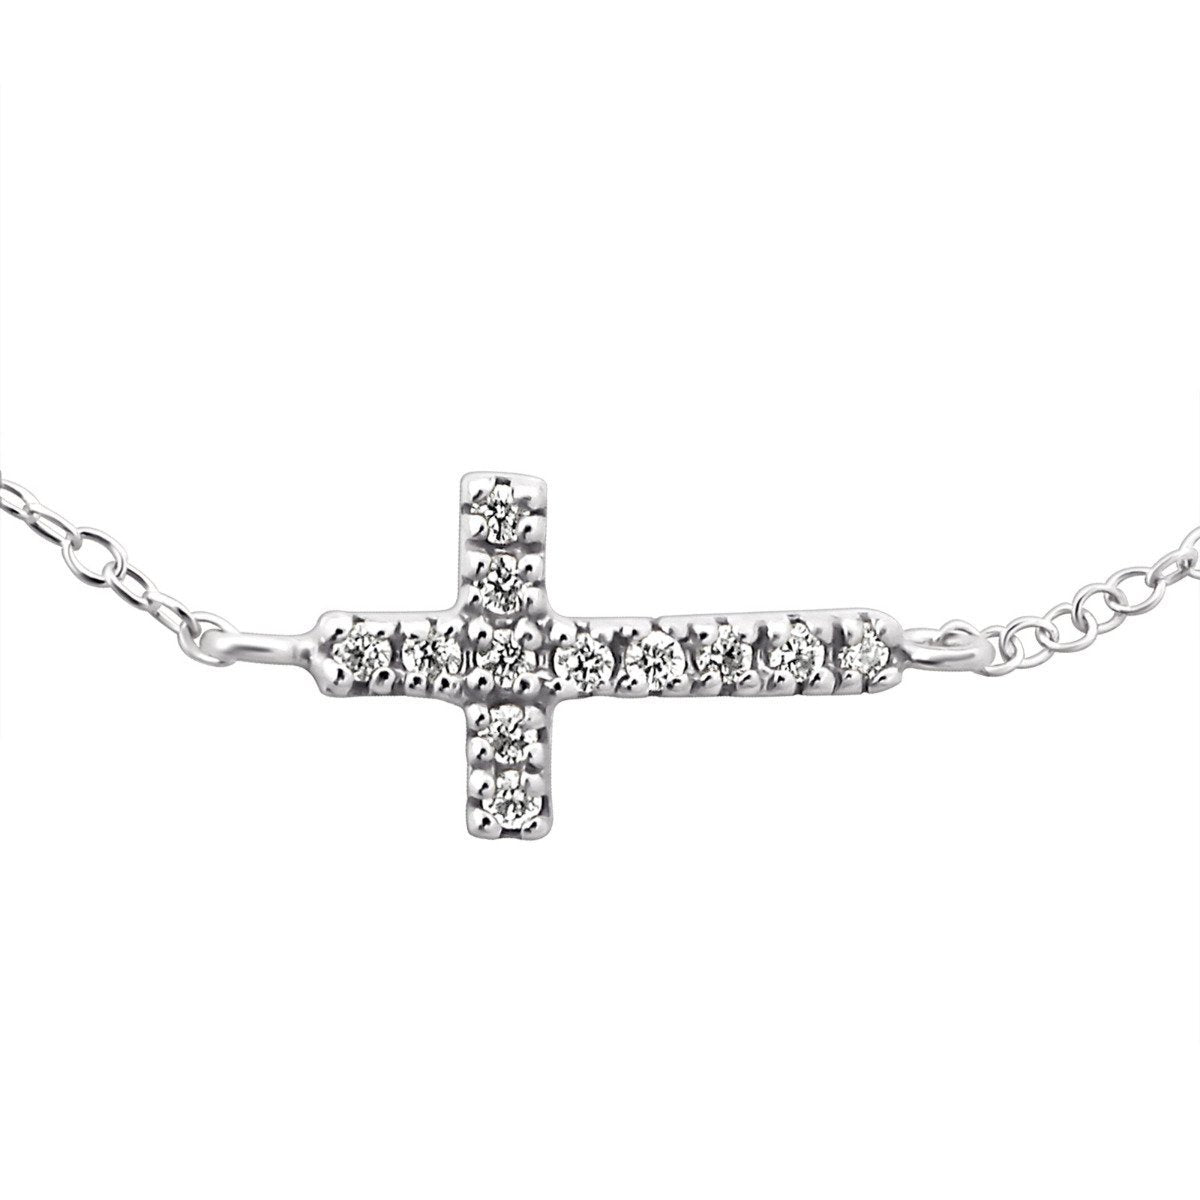 Handmade Sterling Silver Cross Bracelet